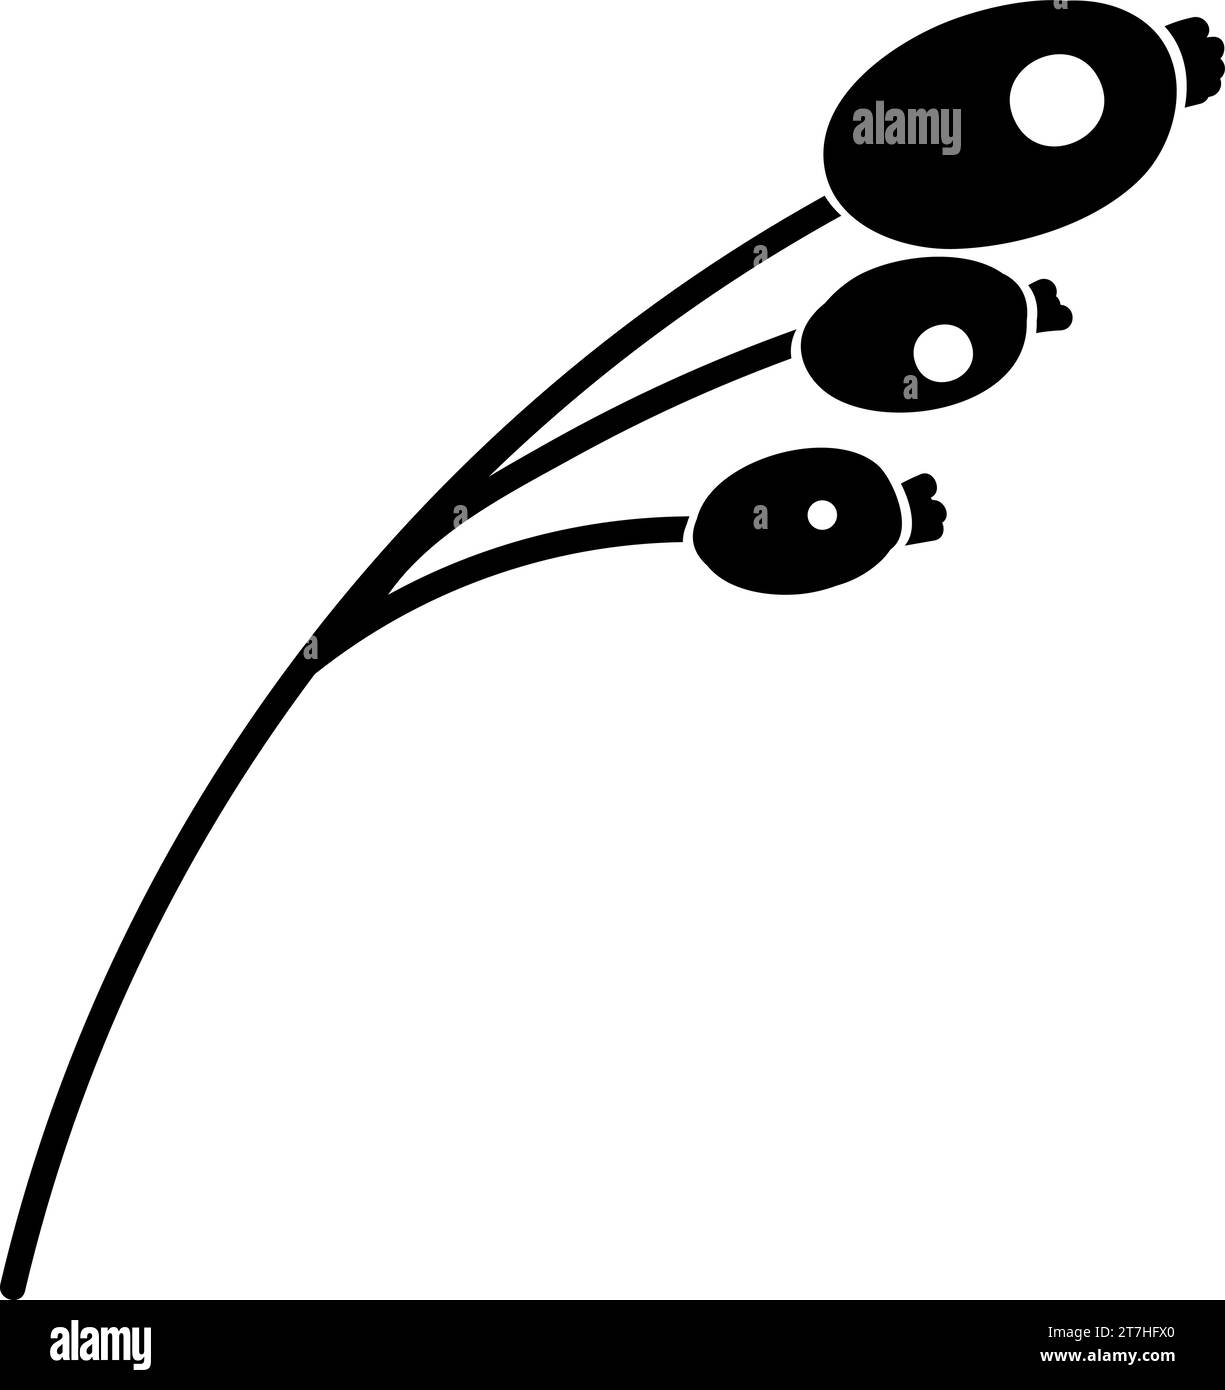 Doodle silhouette de branche de baies de cornouilles, élément de décoration de festival d'hiver. Baies de Dogwood, nourriture d'hiver. Vecteur à main levée de forme noire simple Illustration de Vecteur